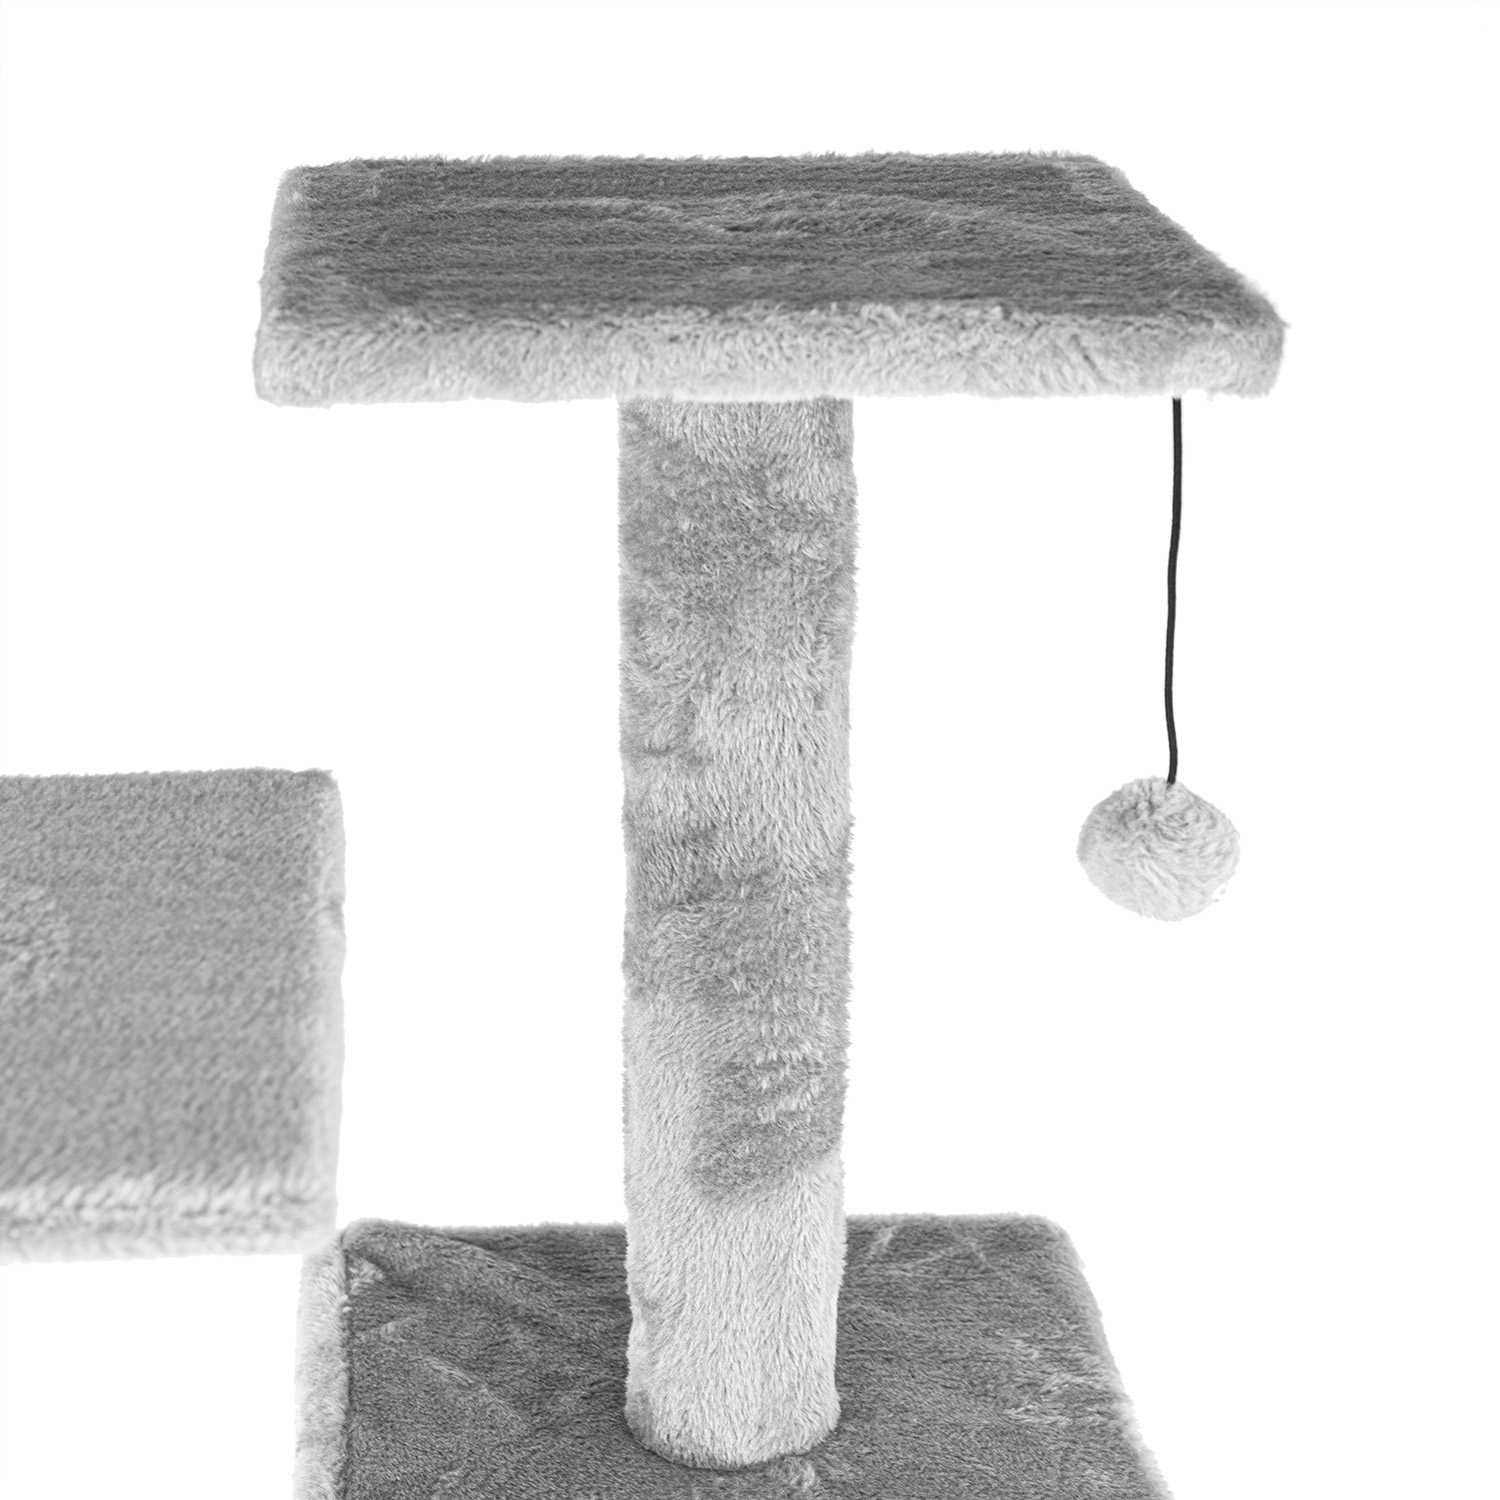 Drapak dla kota wysoki 119cm DK02 wieża legowisko domek hamak 4poziomy